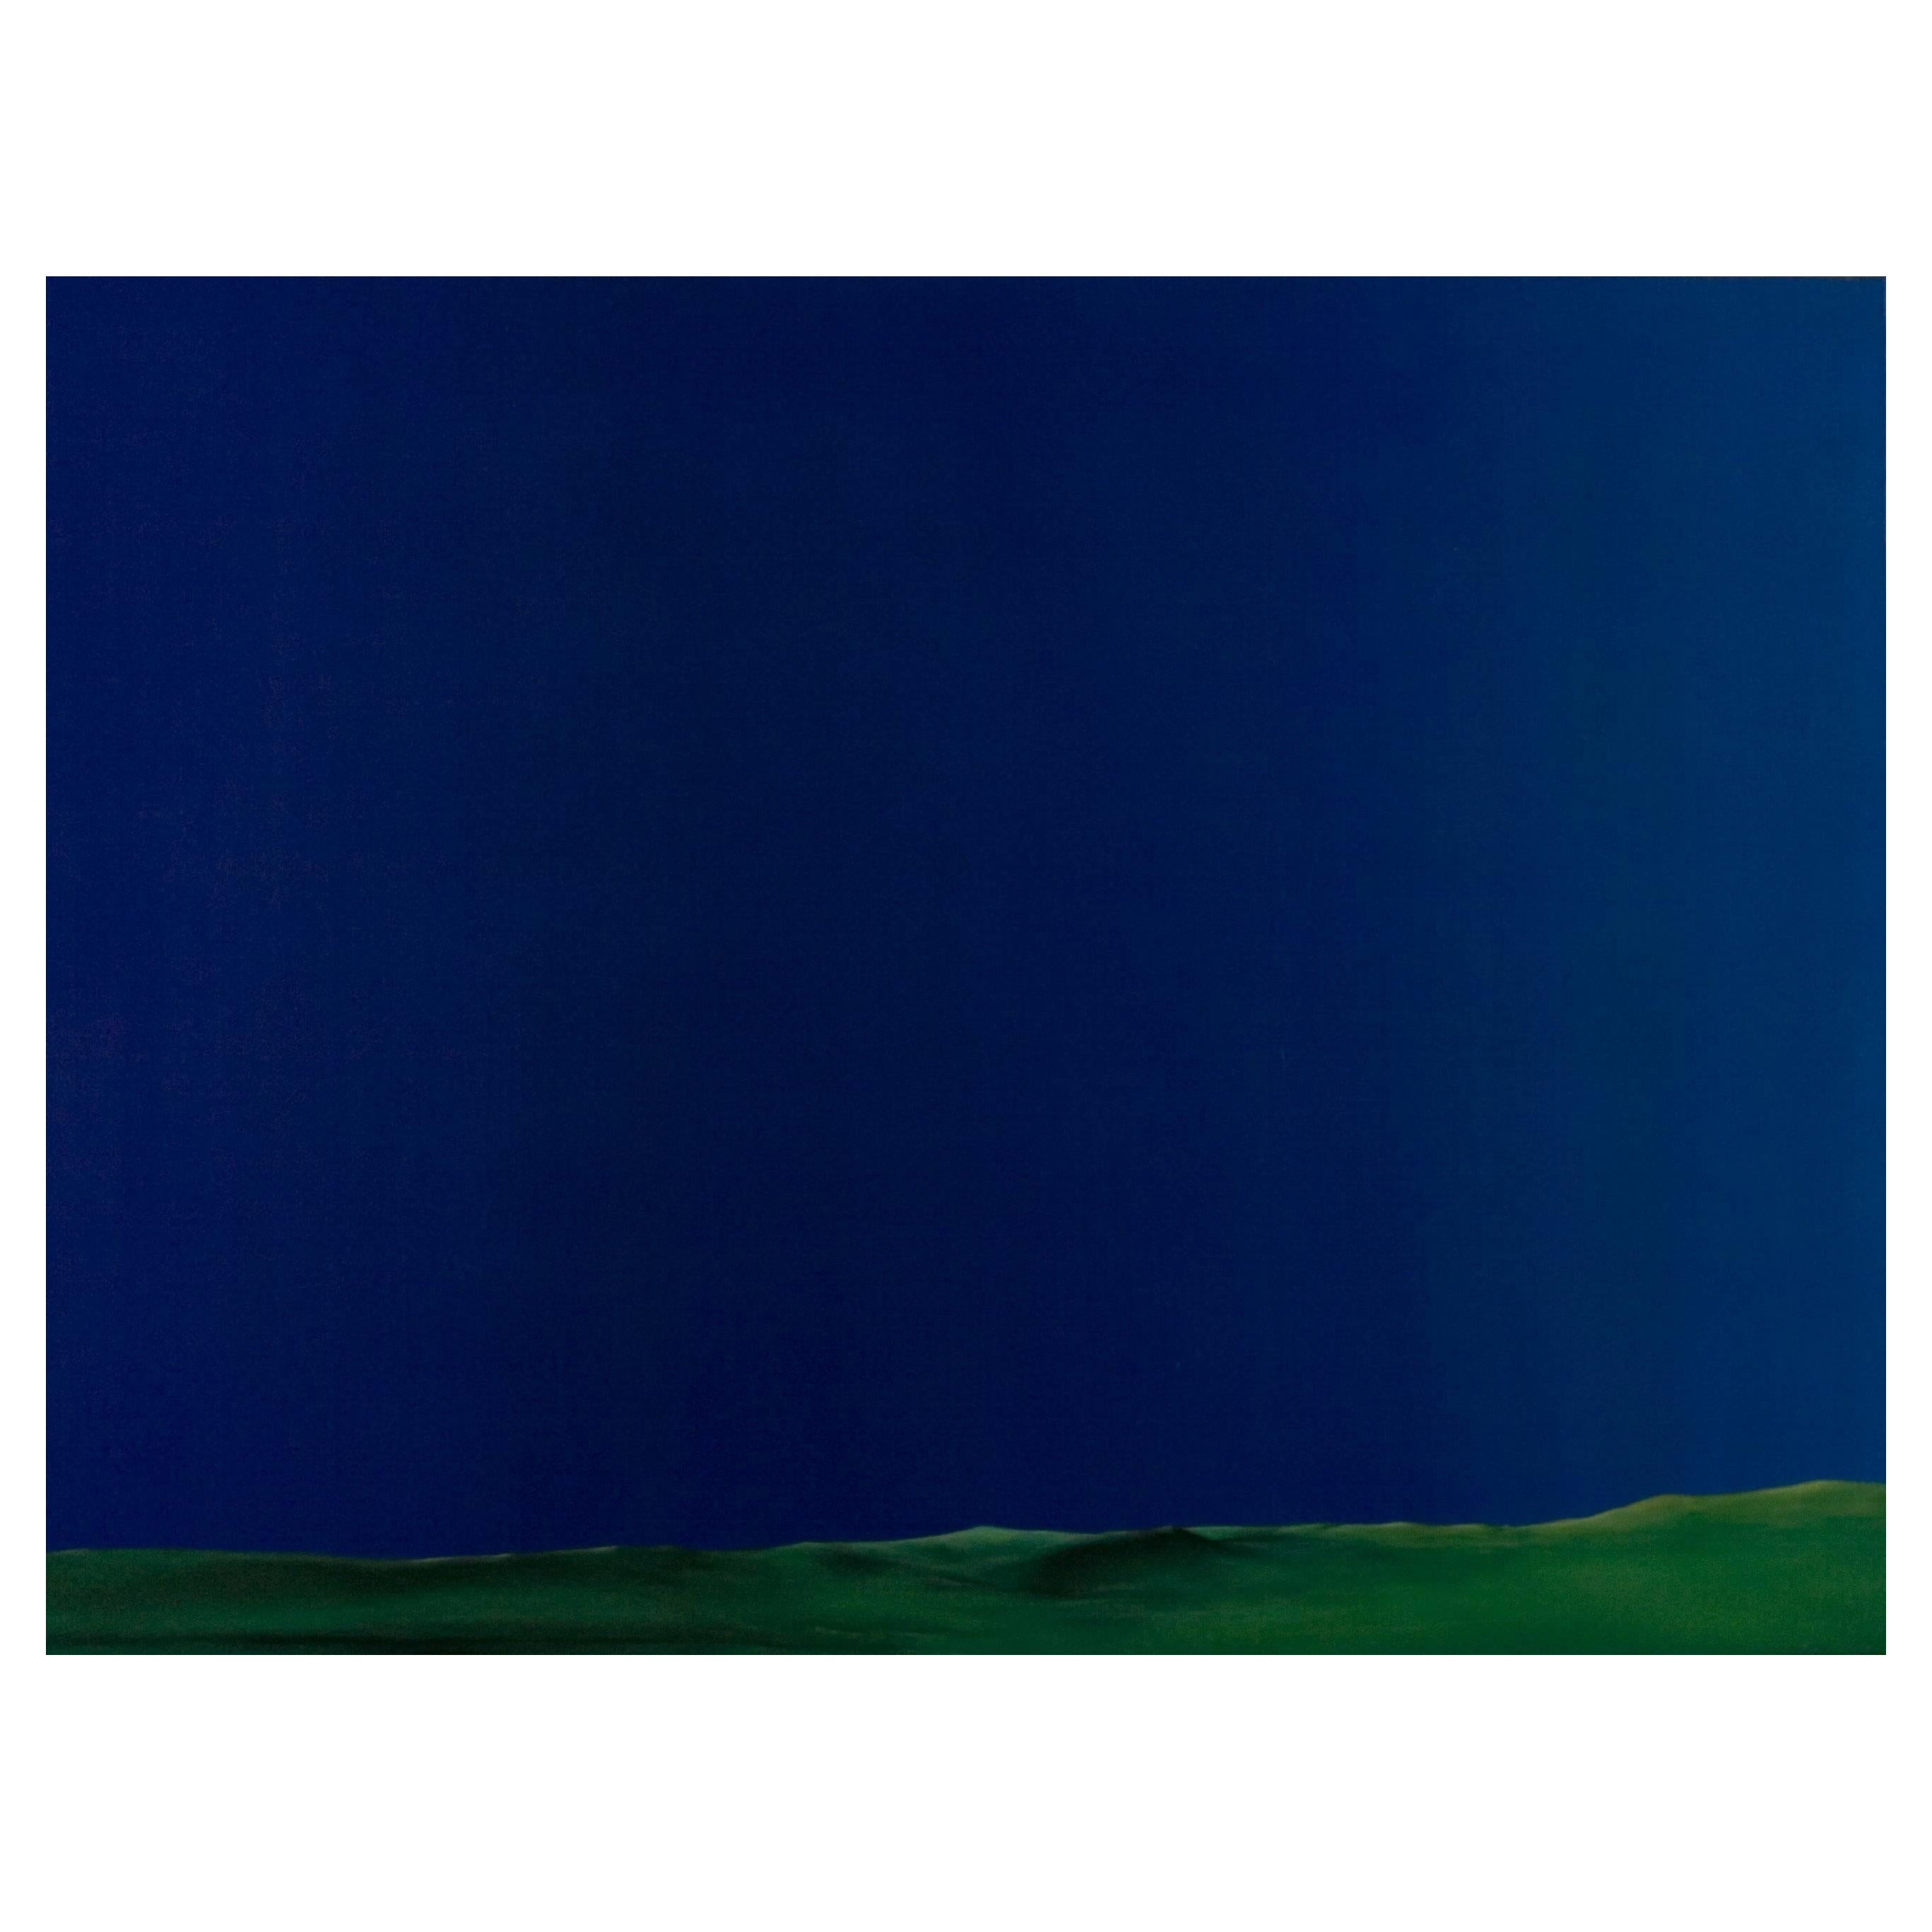 Cătălin Petrișor Figurative Painting - Chroma sky (Blue key) 10 - Contemporary, Blue, Minimalist, Figurative, Landscape